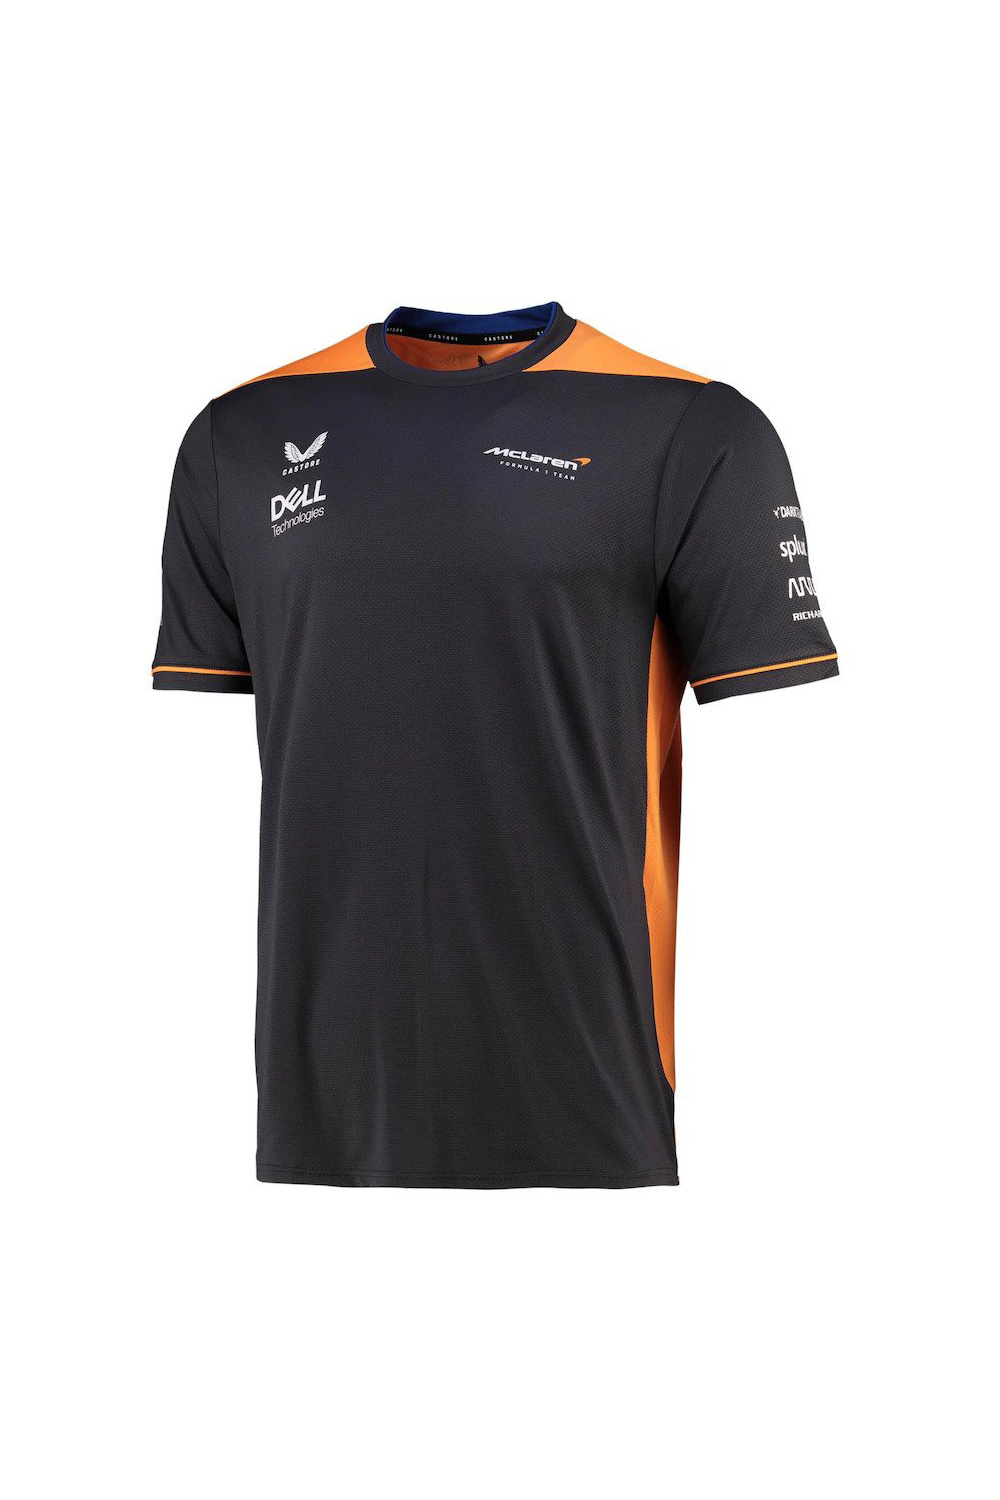 McLaren Herren Team Set Up T-Shirt Grau Orange 2022